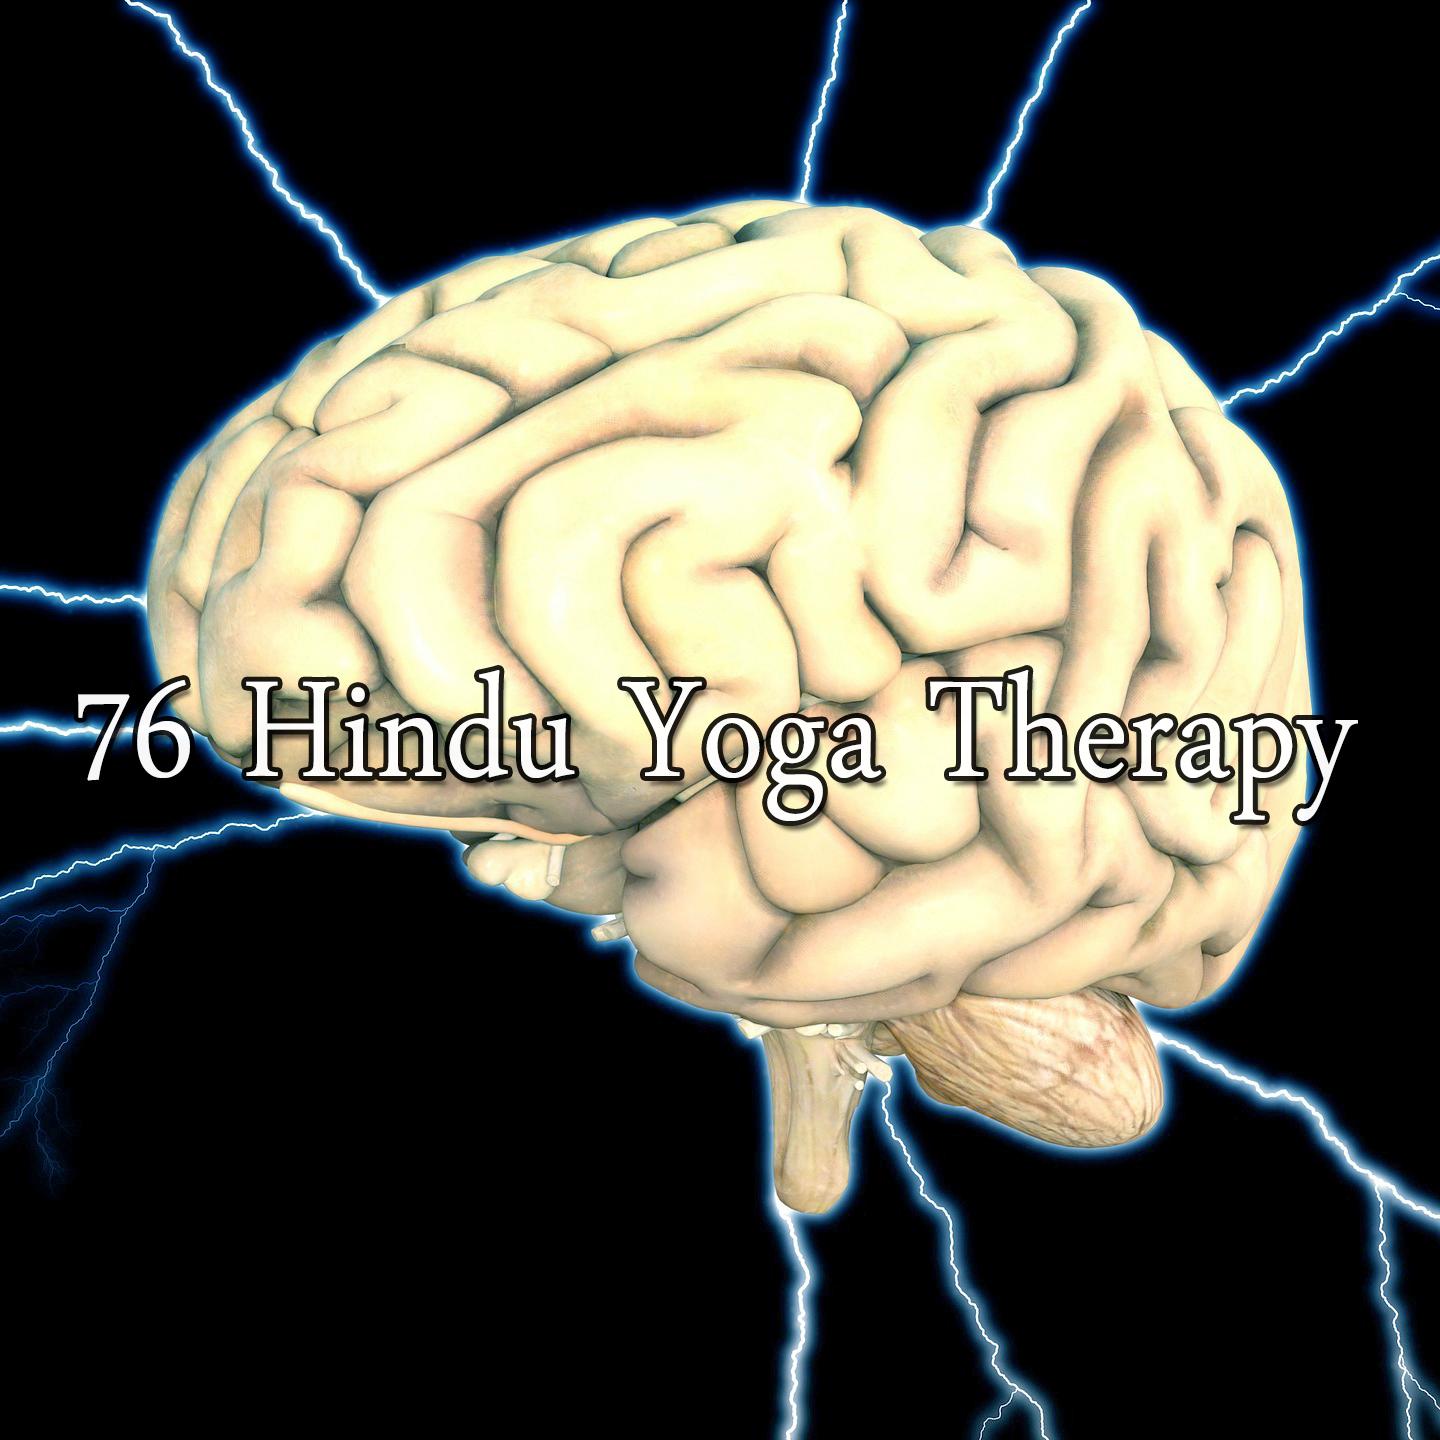 76 Hindu Yoga Therapy